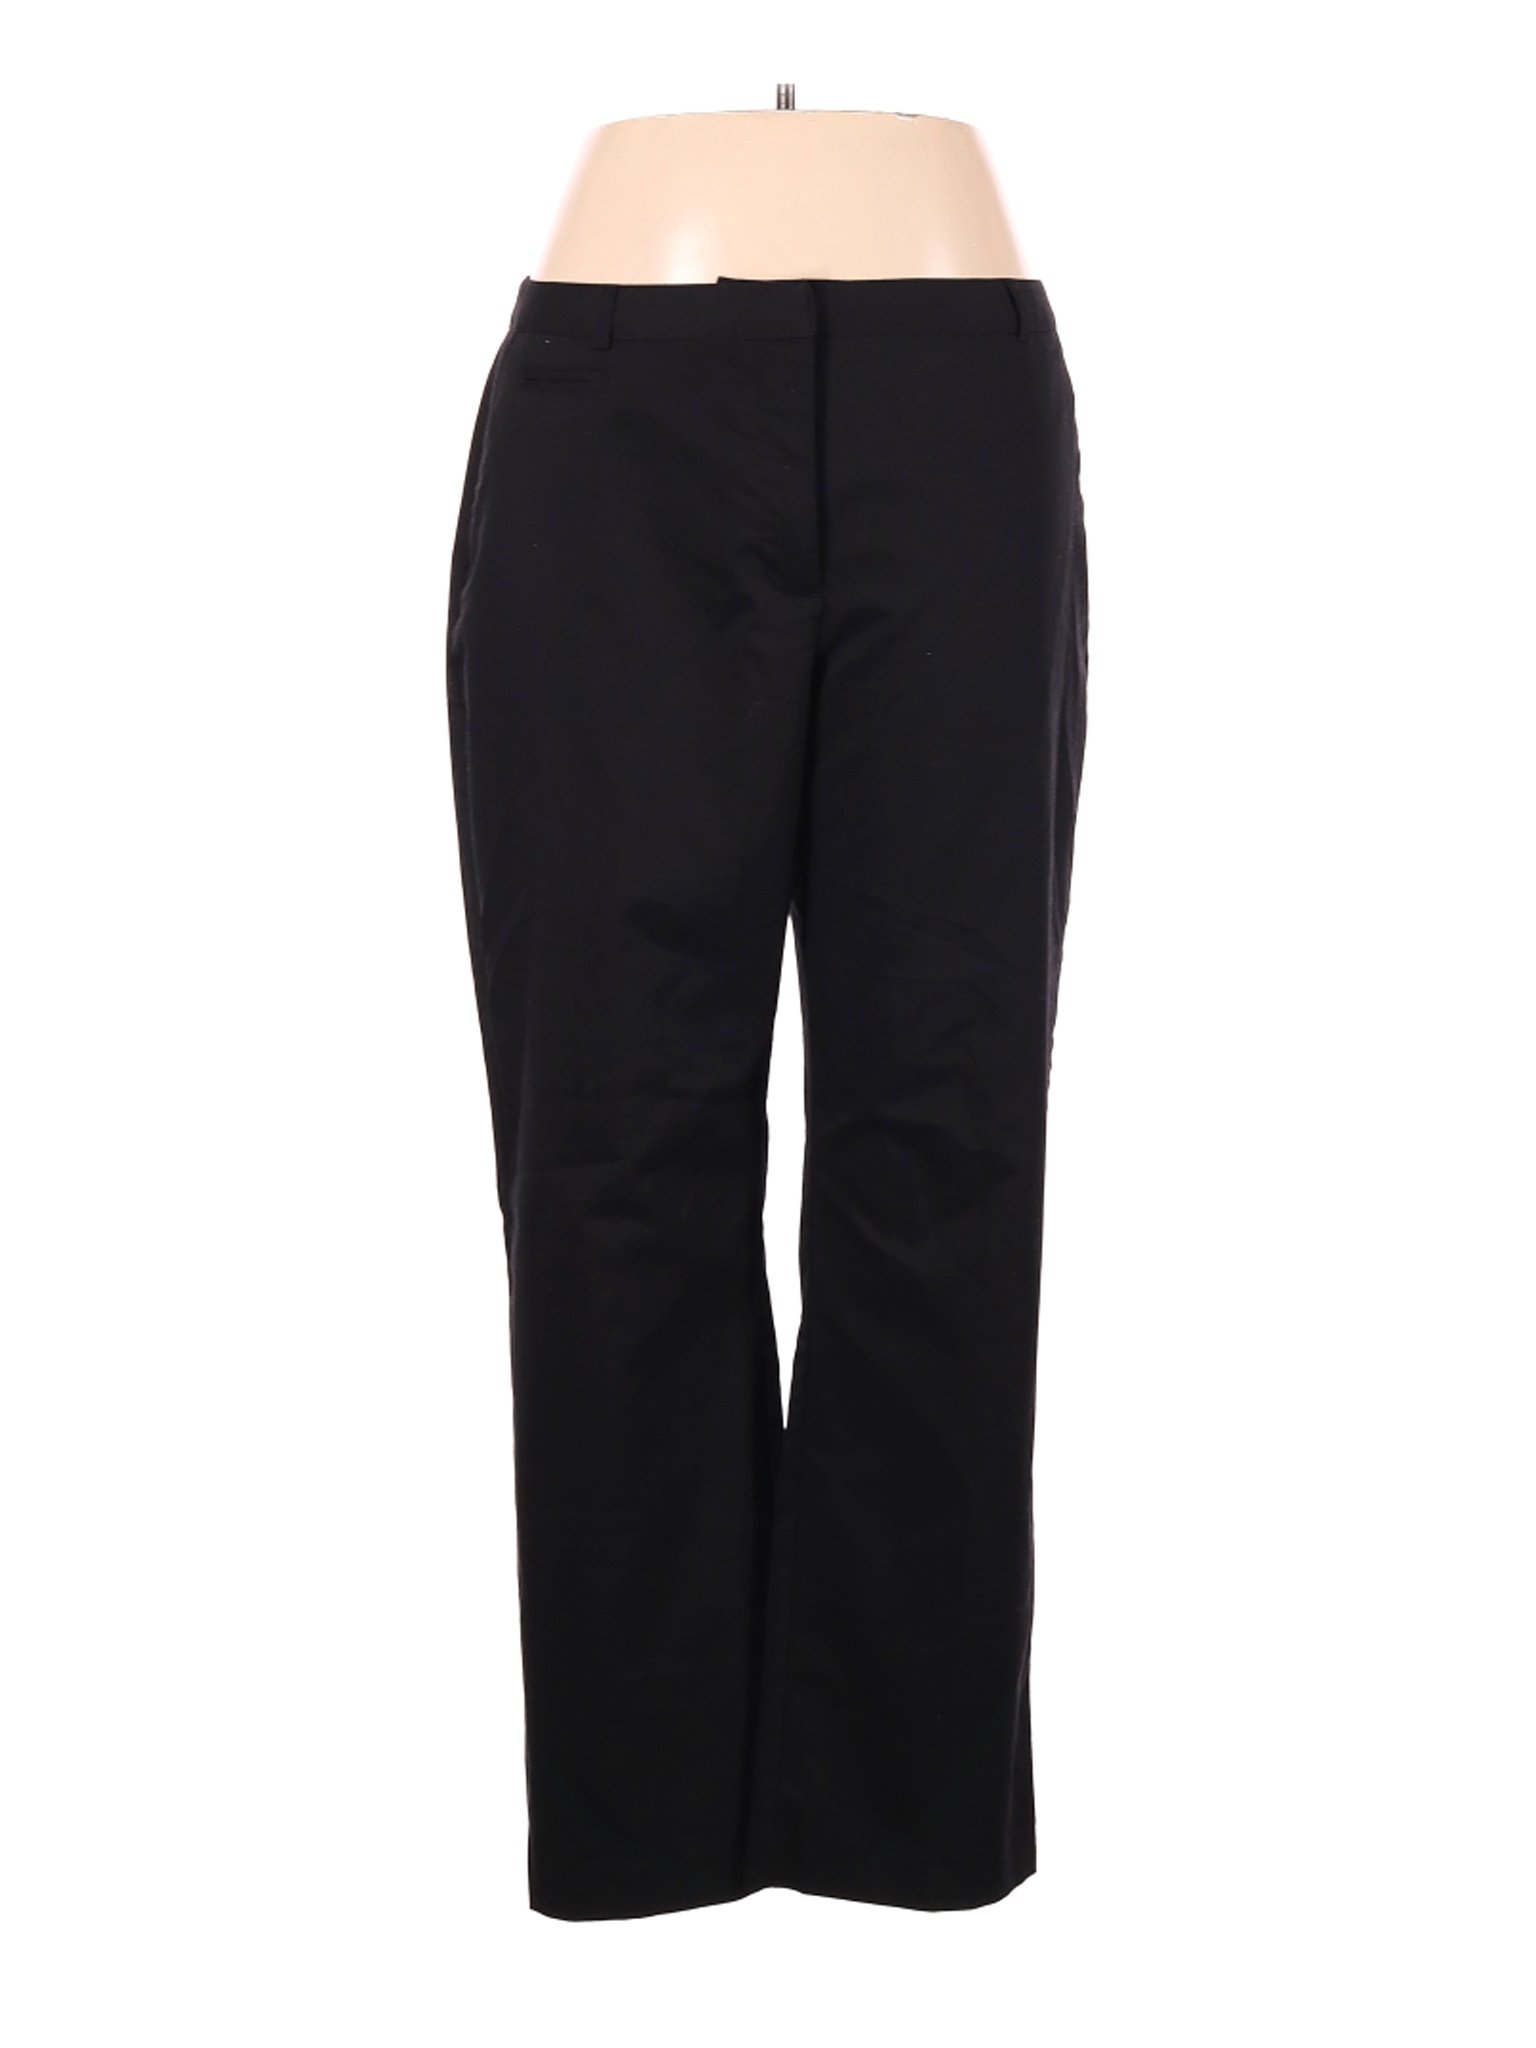 Jaclyn Smith Women Black Dress Pants 14 | eBay